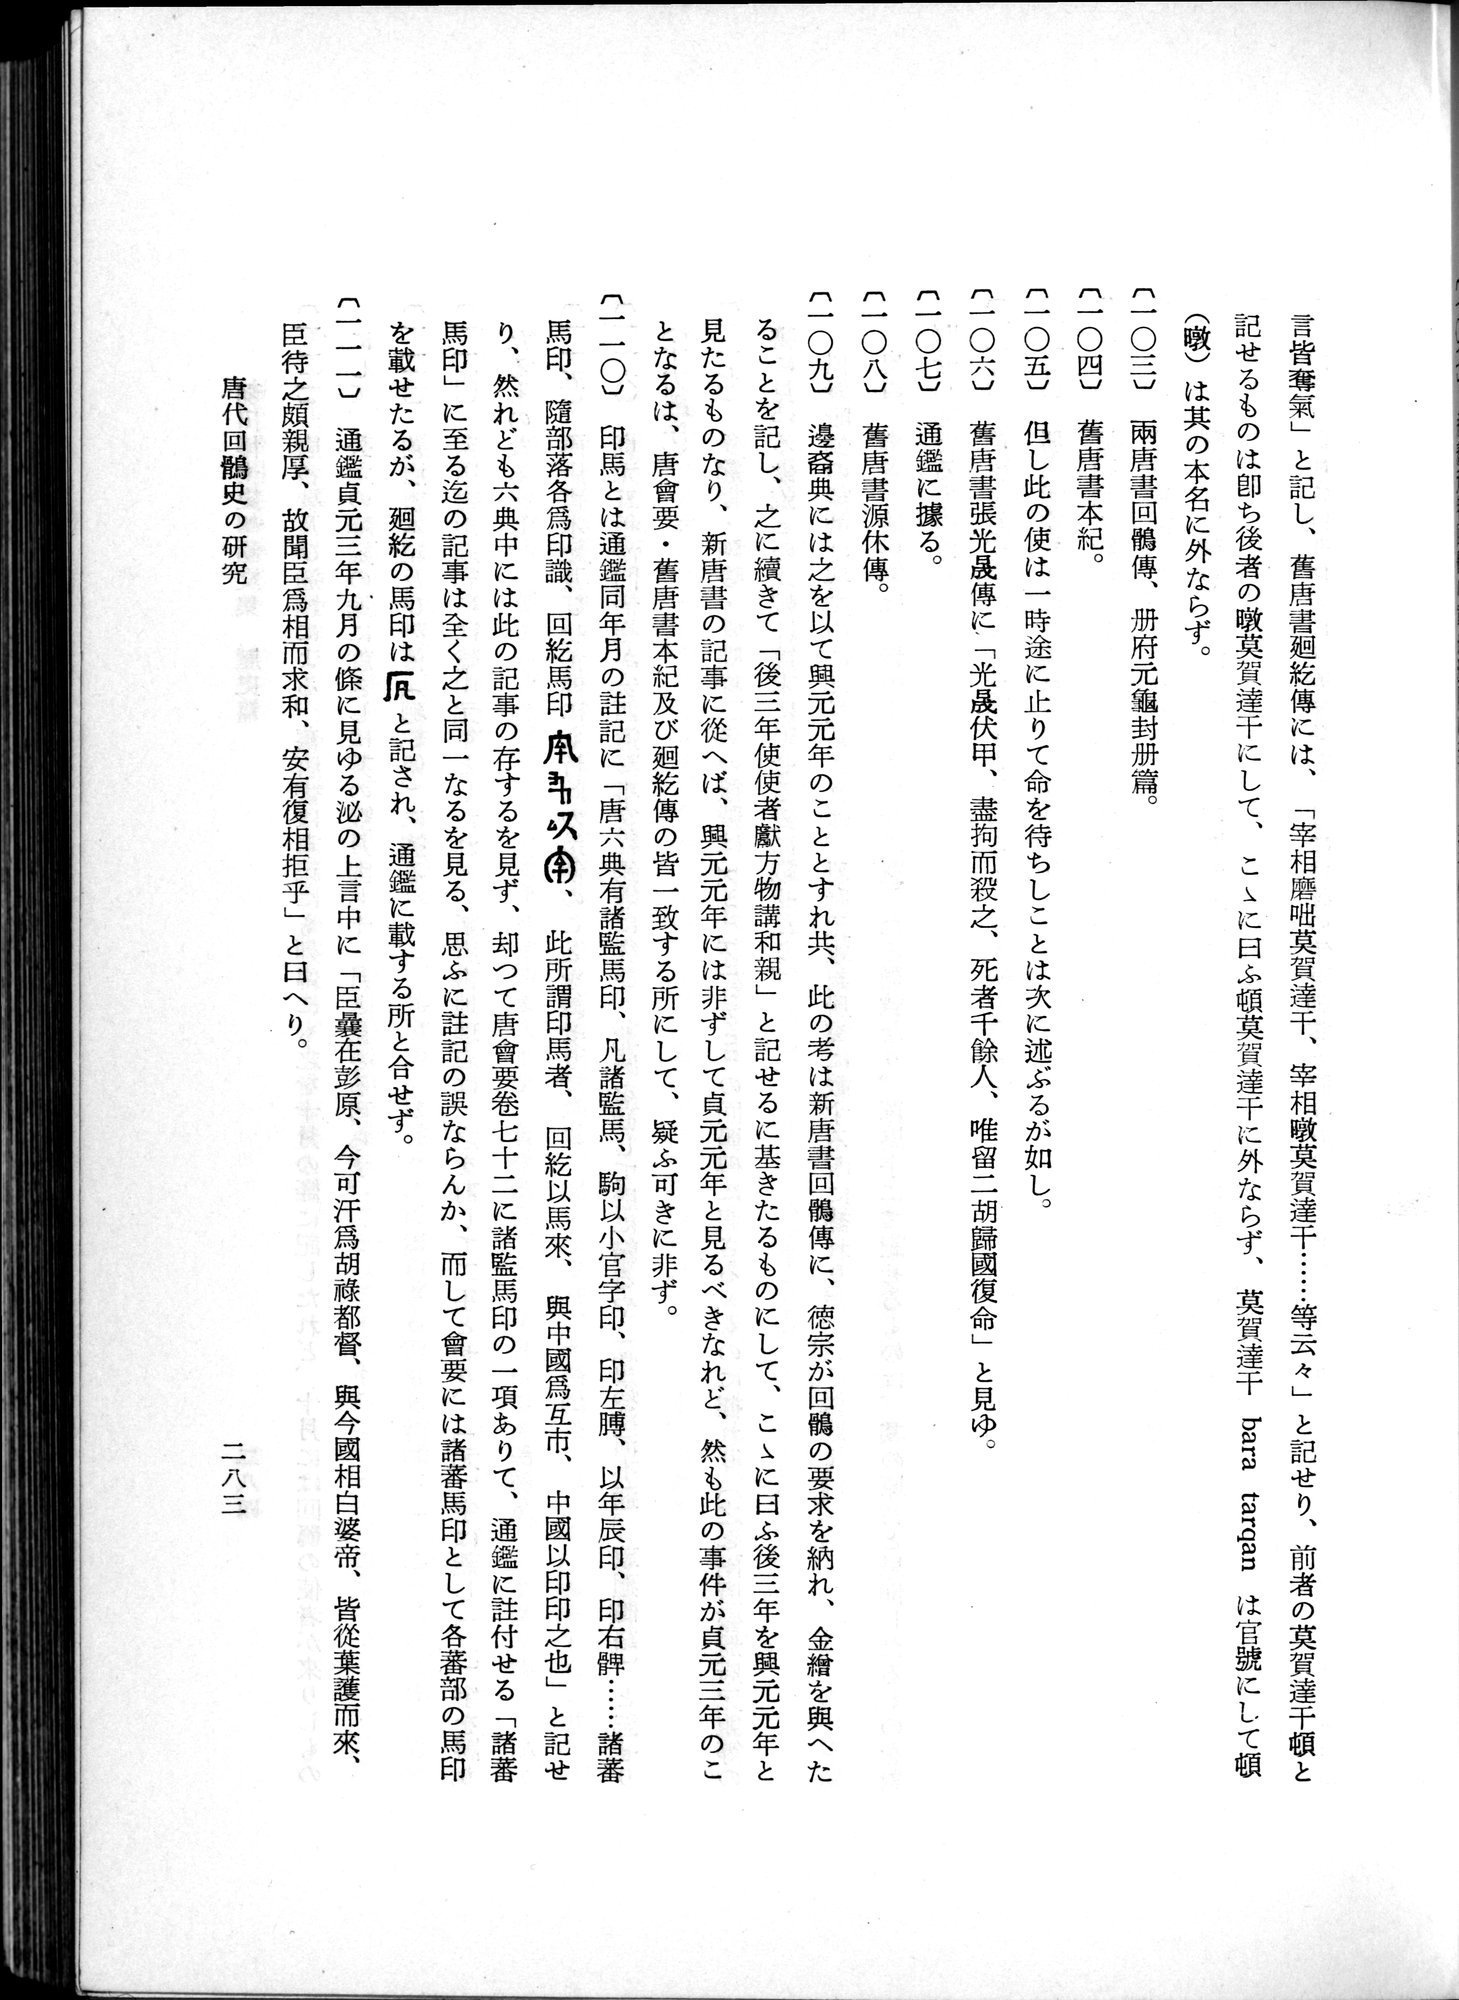 羽田博士史学論文集 : vol.1 / Page 321 (Grayscale High Resolution Image)